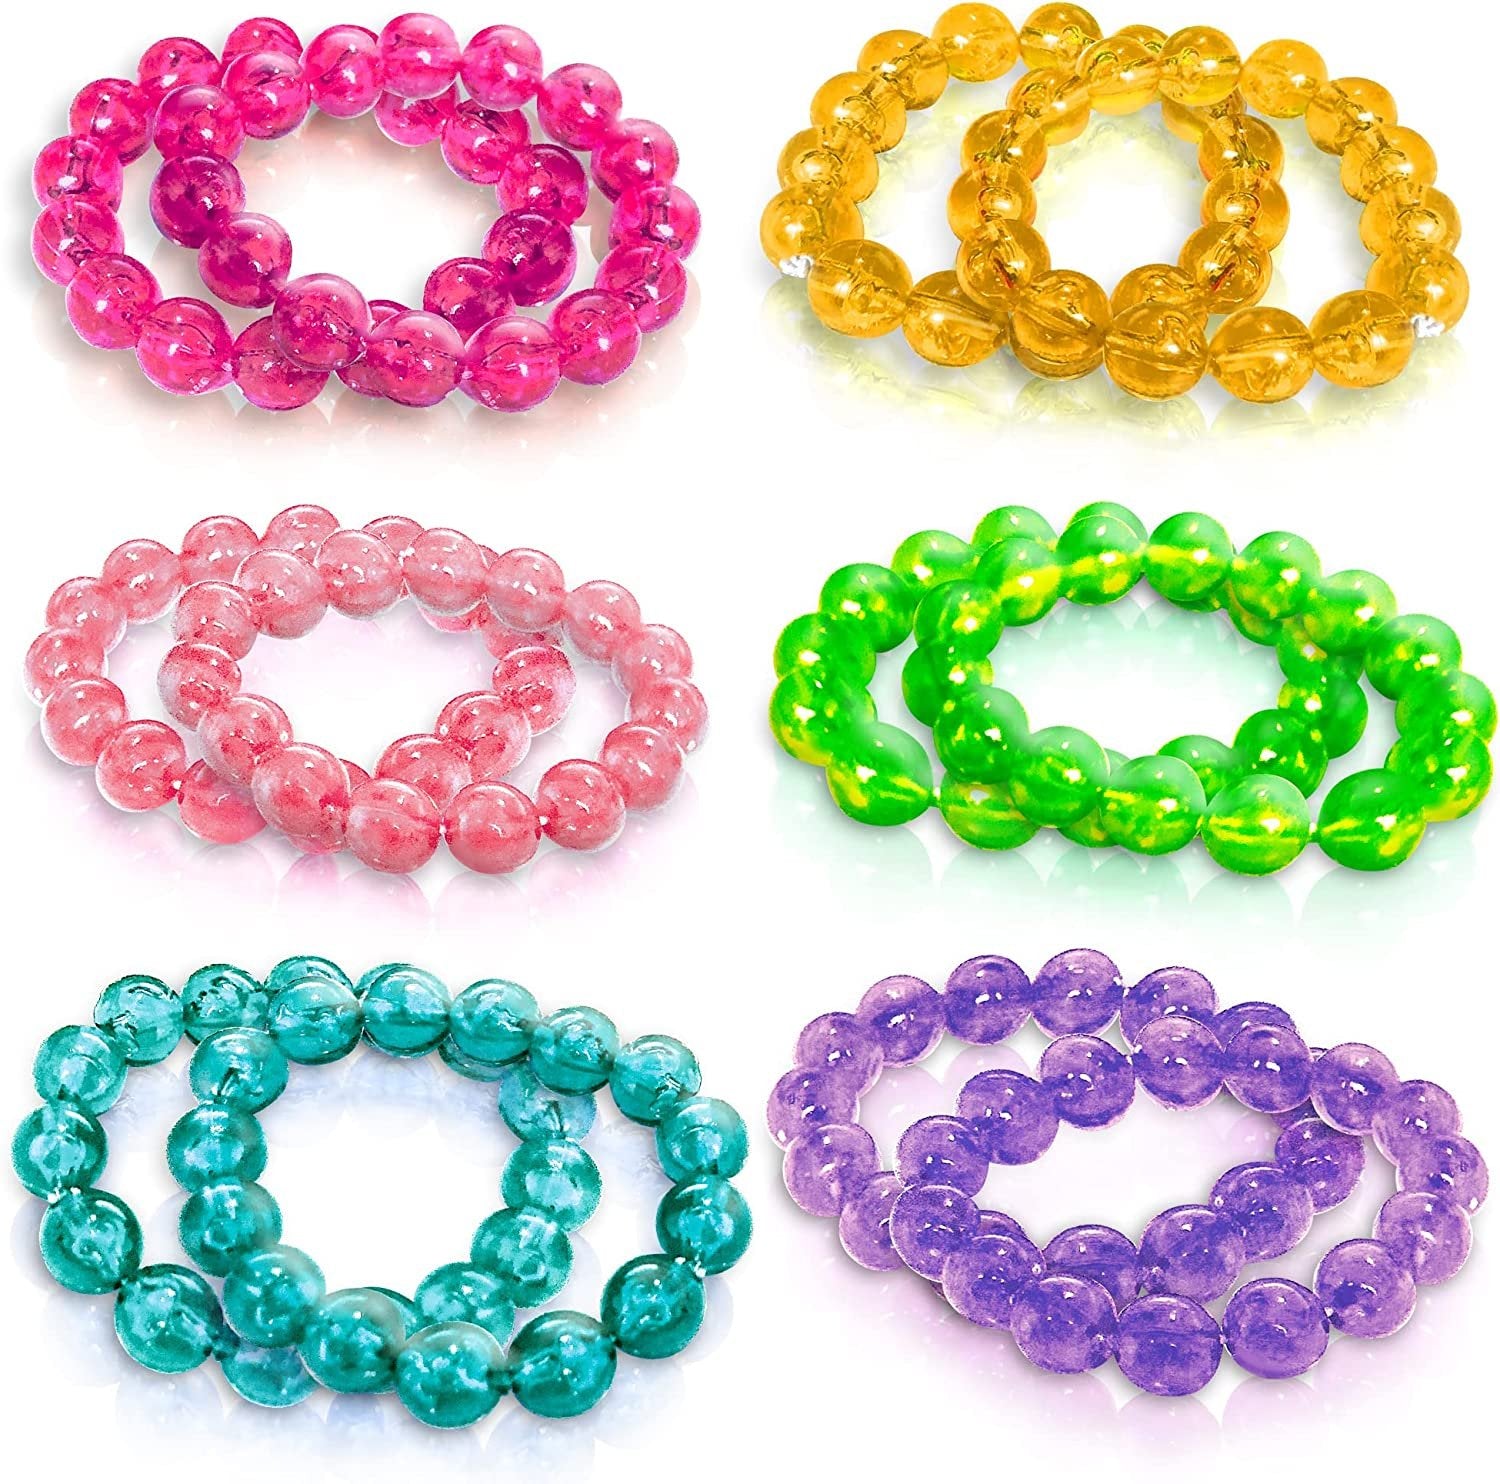 All the colors in this cute bracelet set! {$24} #bracelets #armcandy  #accessories #allthecolors #simplychicmandeville #mandevilleboutique… |  Instagram